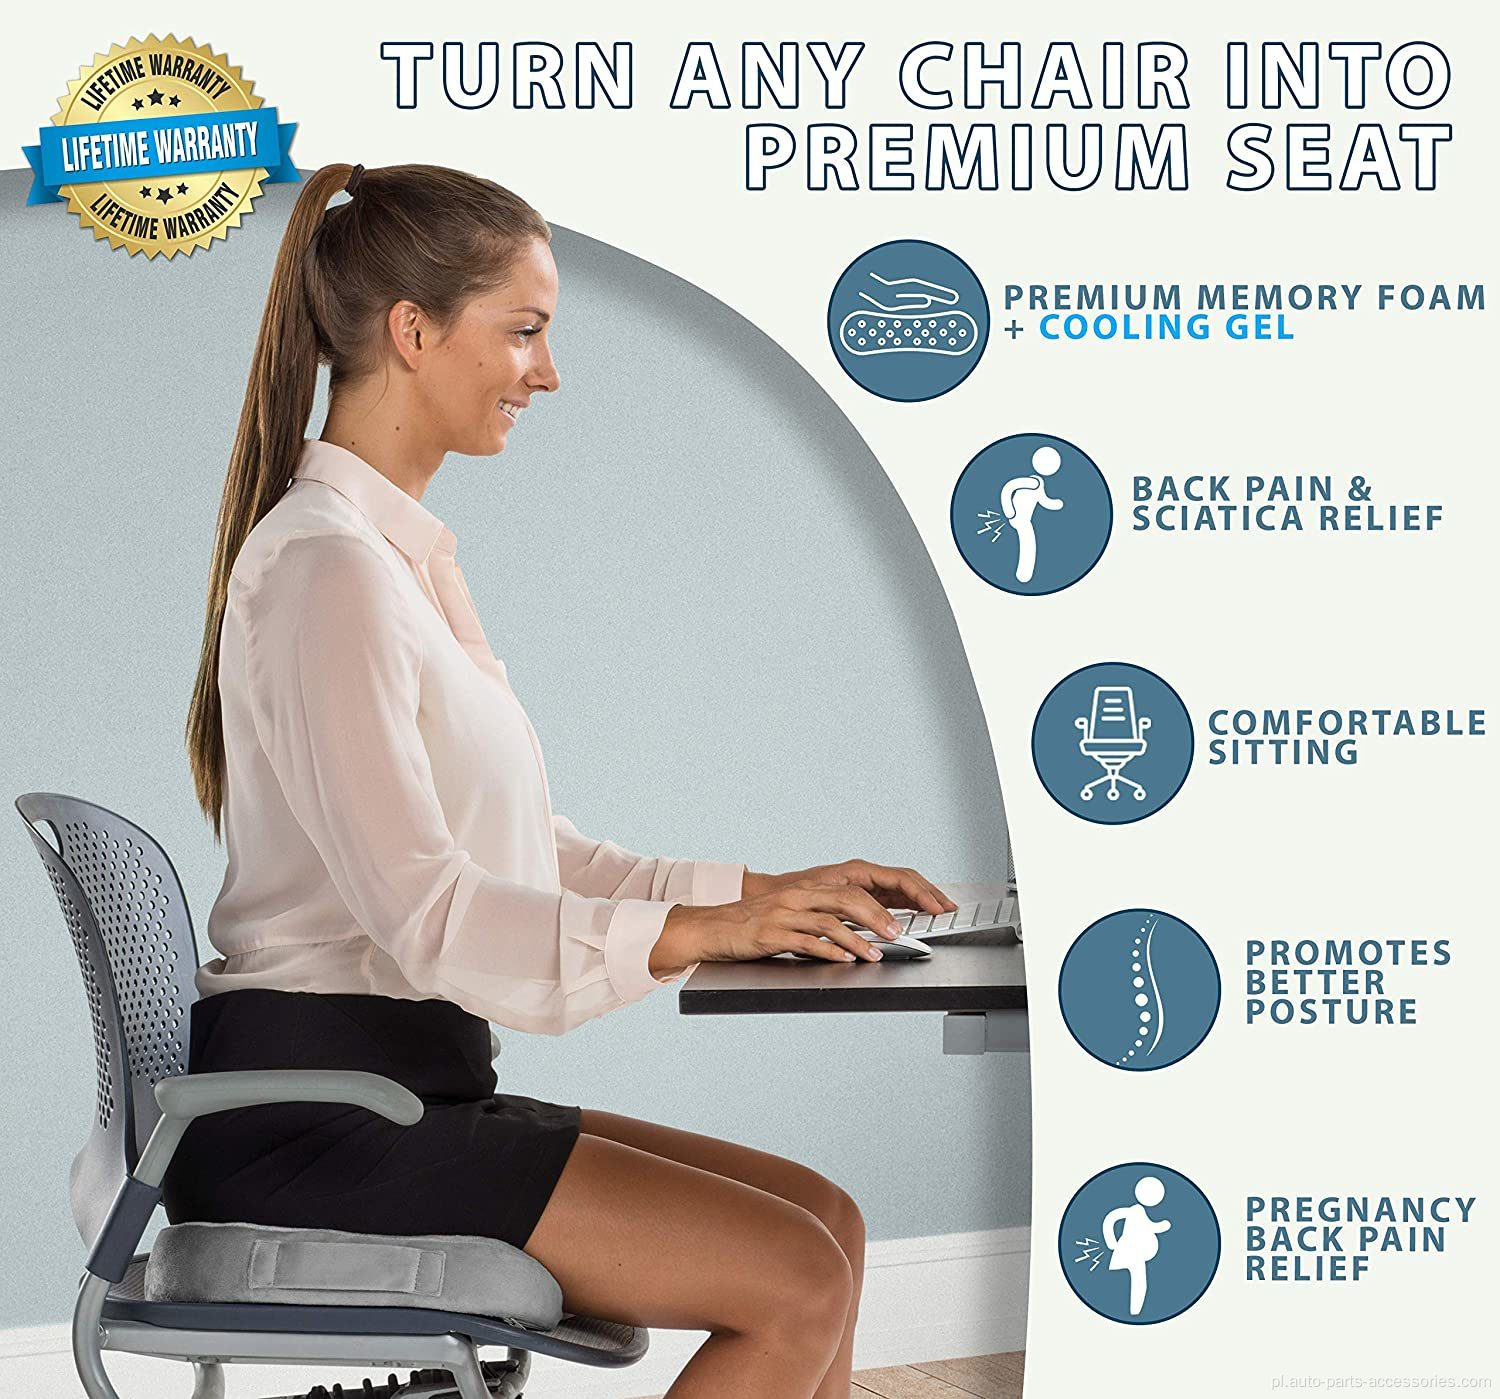 Poduszka na siedzenia ulepszona żel - nie maliczny żel ortopedyczny